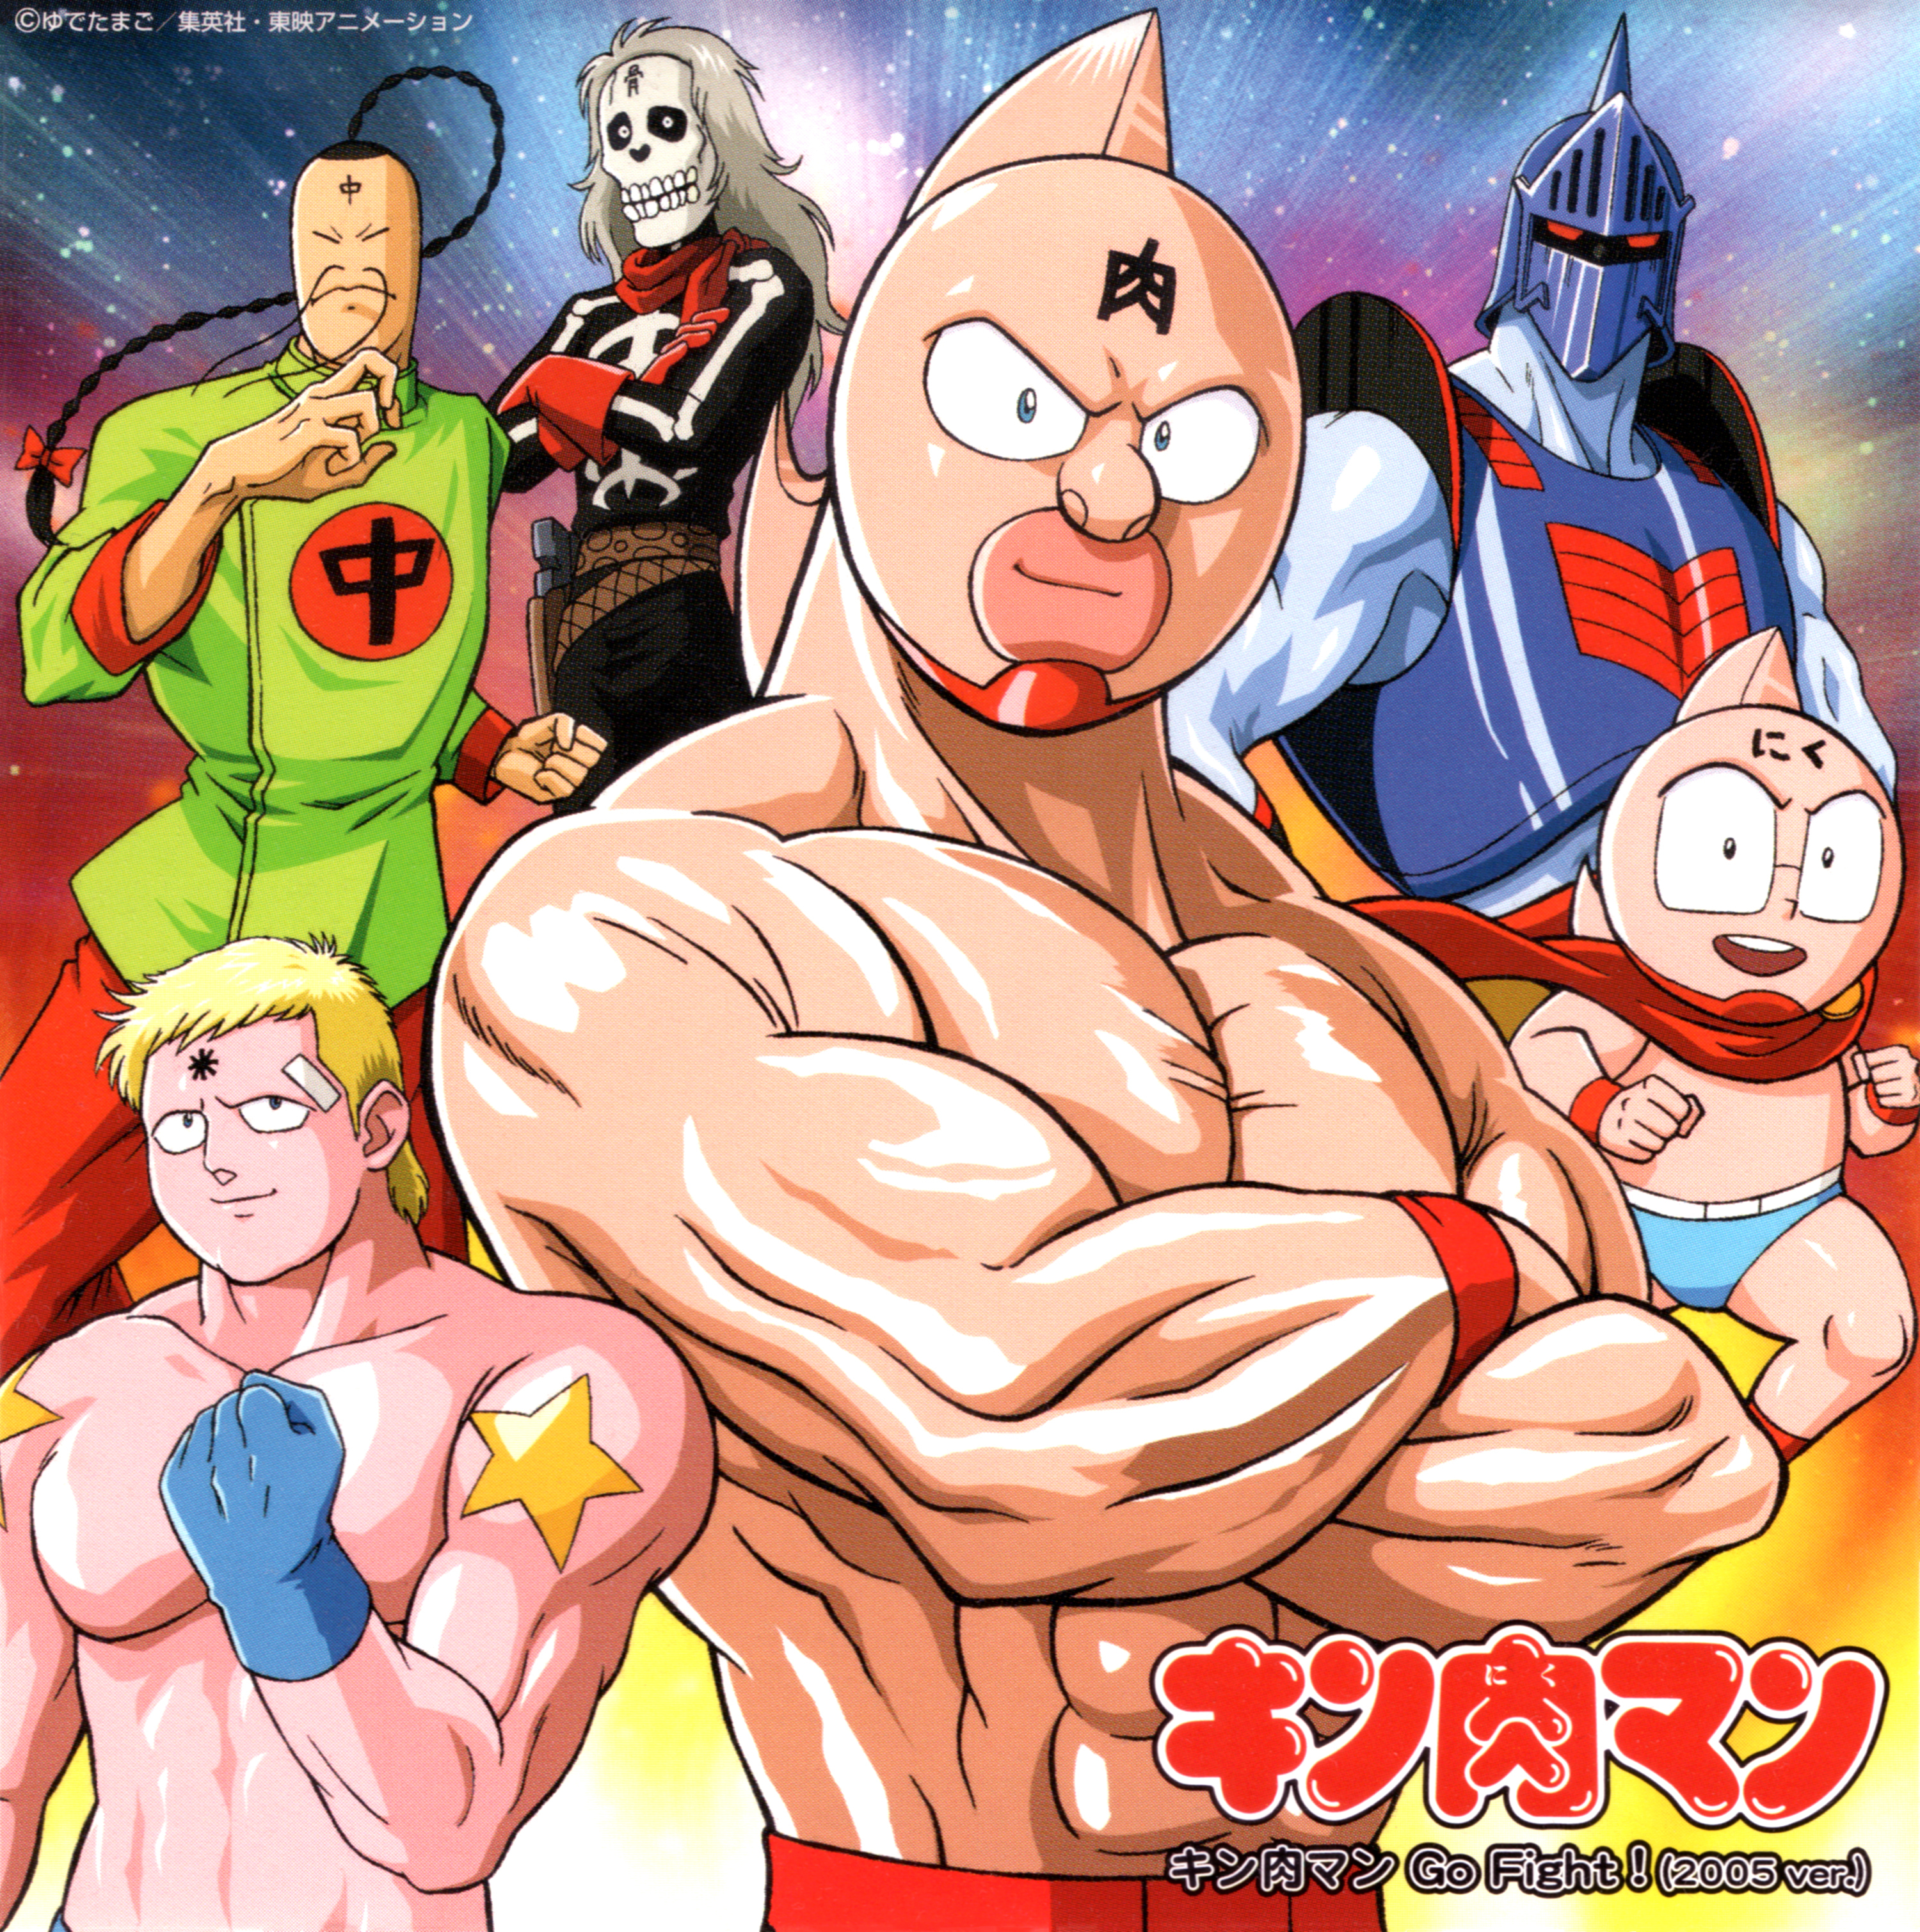 串田アキラ (くしだあきら) シングルCD『キン肉マン Go Fight! (2005 ver.)』(2005年10月5日発売) 高画質CDジャケット画像 (ジャケ写)